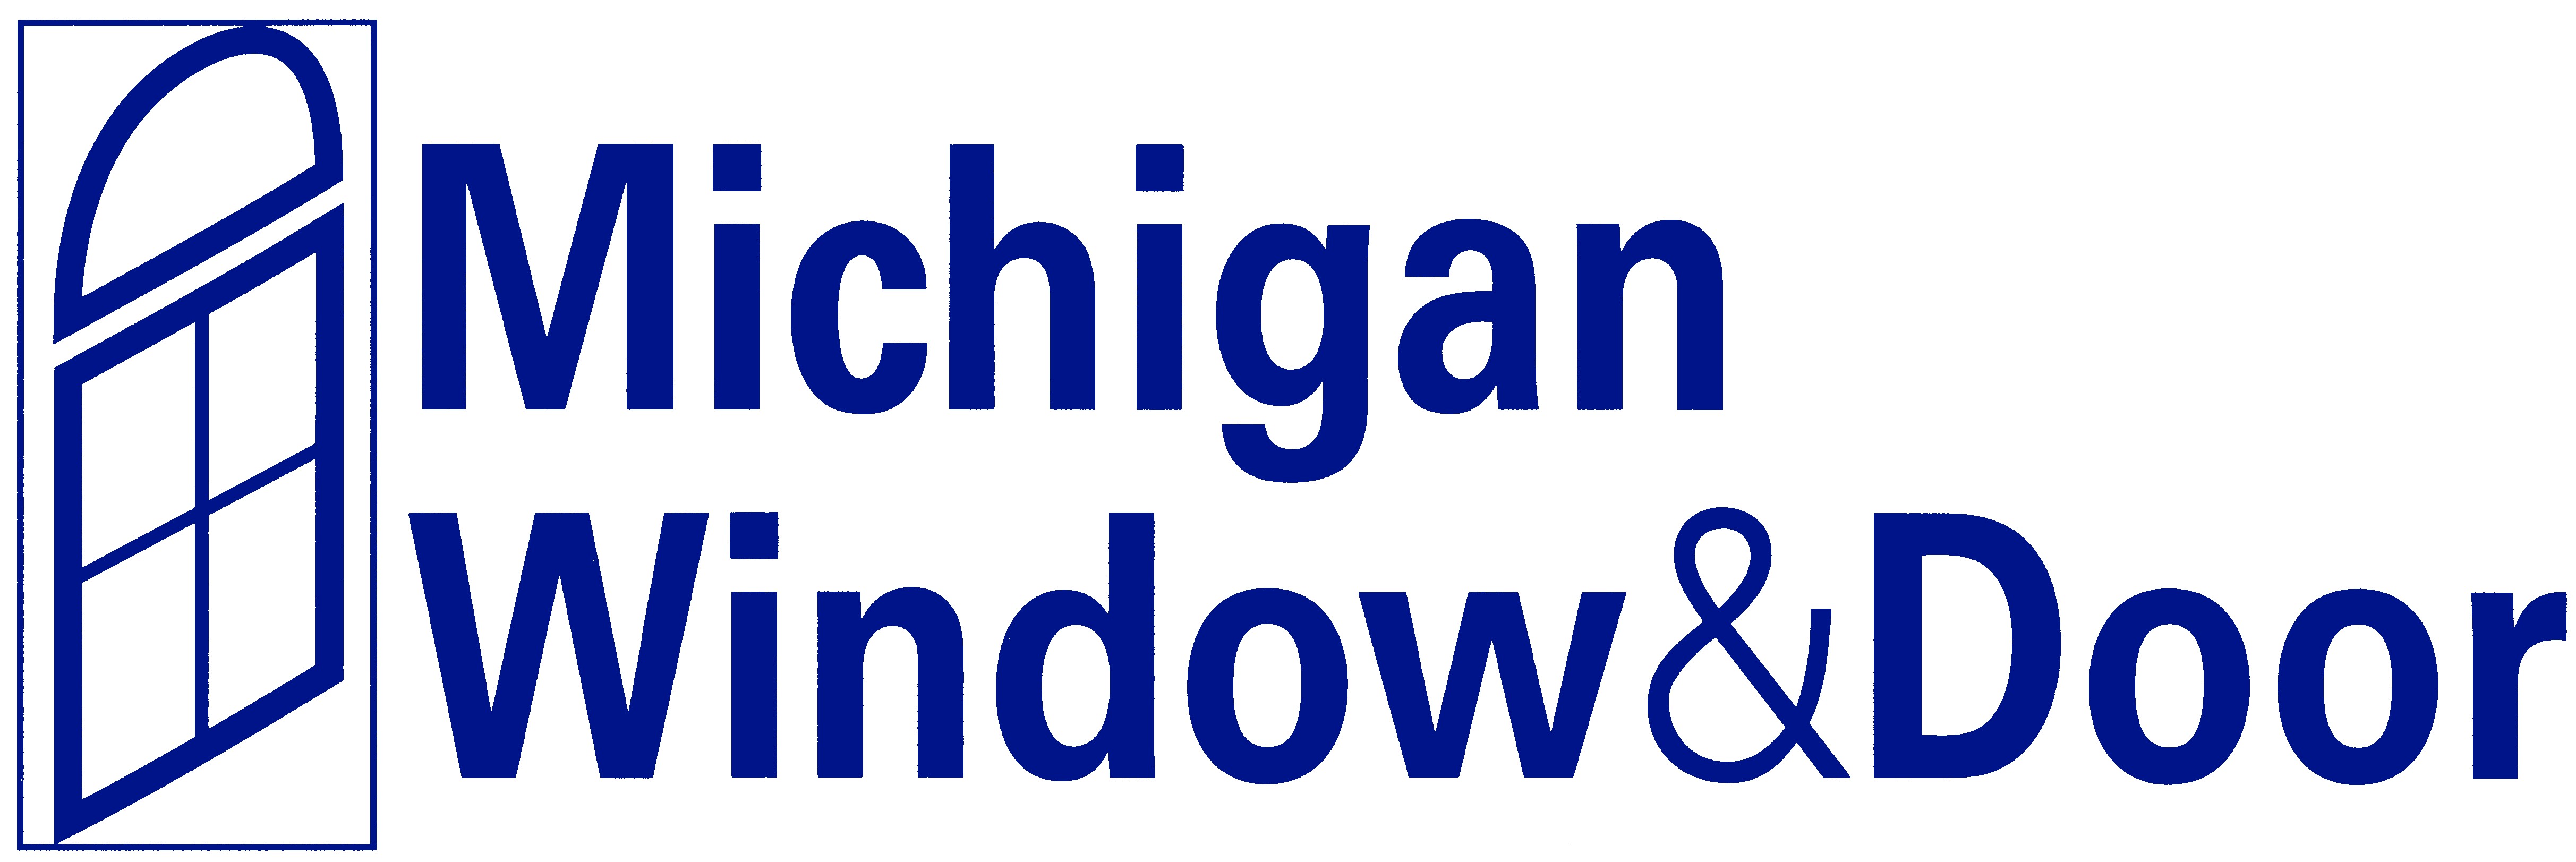 Michigan Window & Door logo